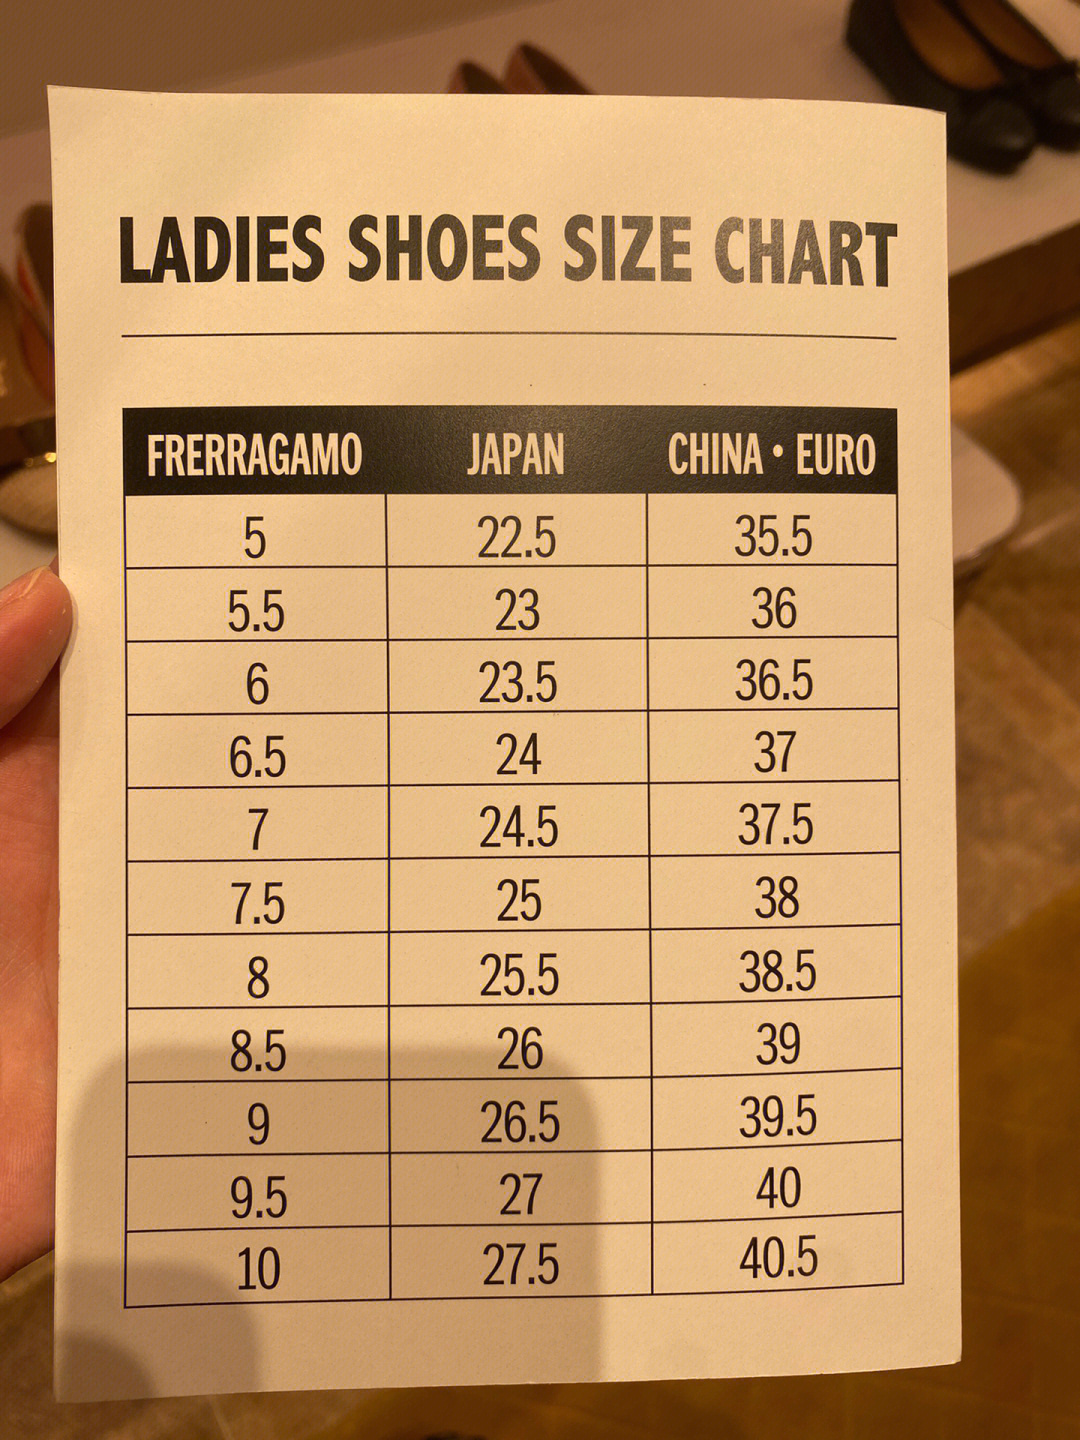 菲拉格慕女鞋尺码对照图片